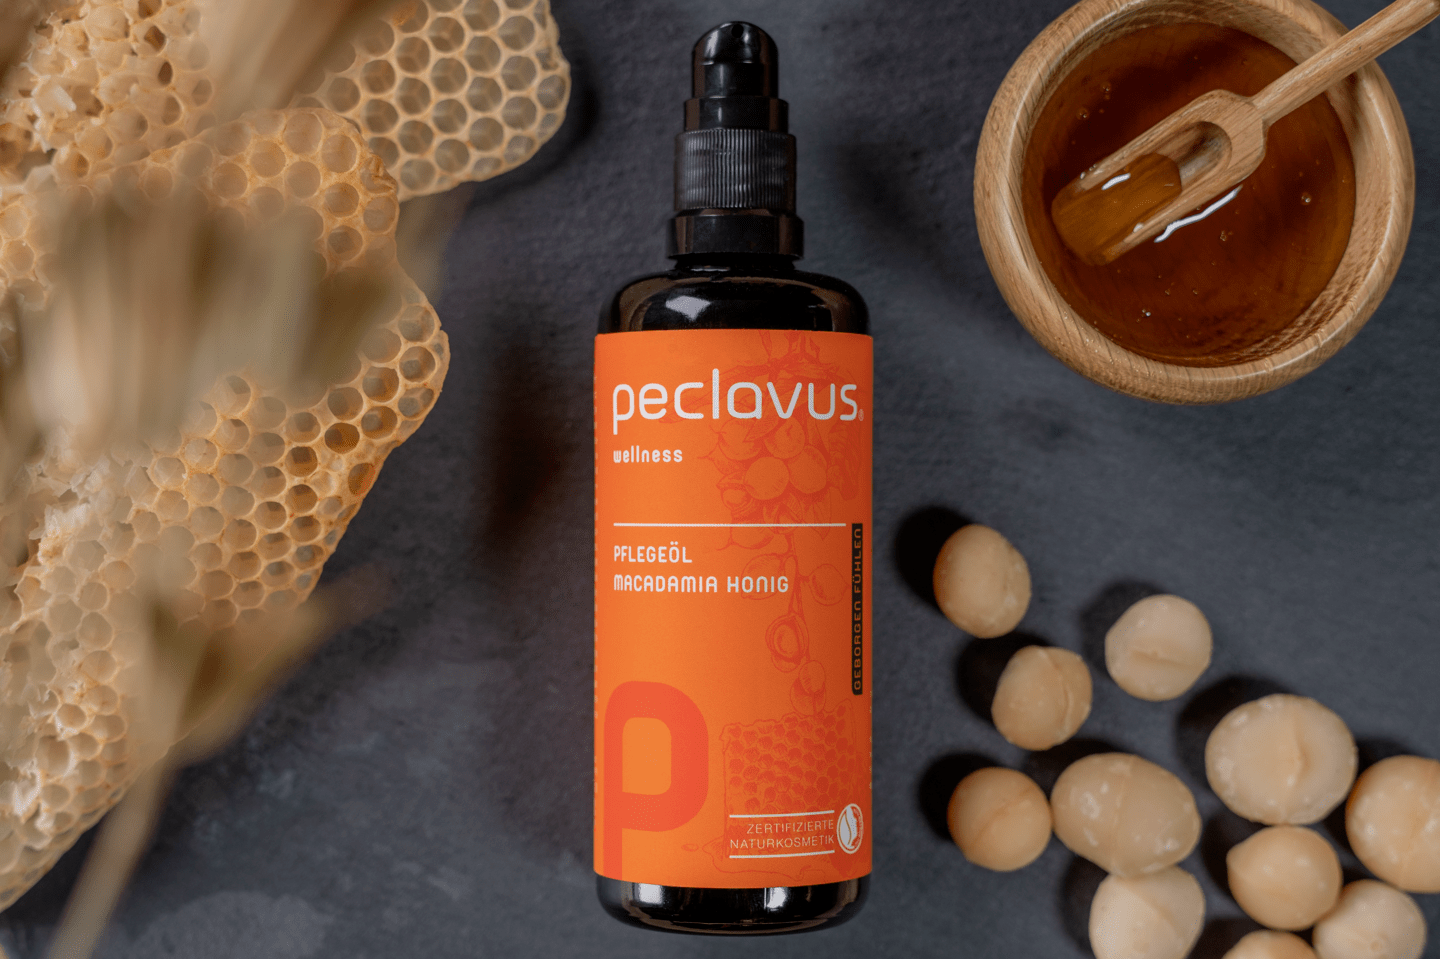 peclavus - Pflegeöl Macadamia Honig, 100 ml